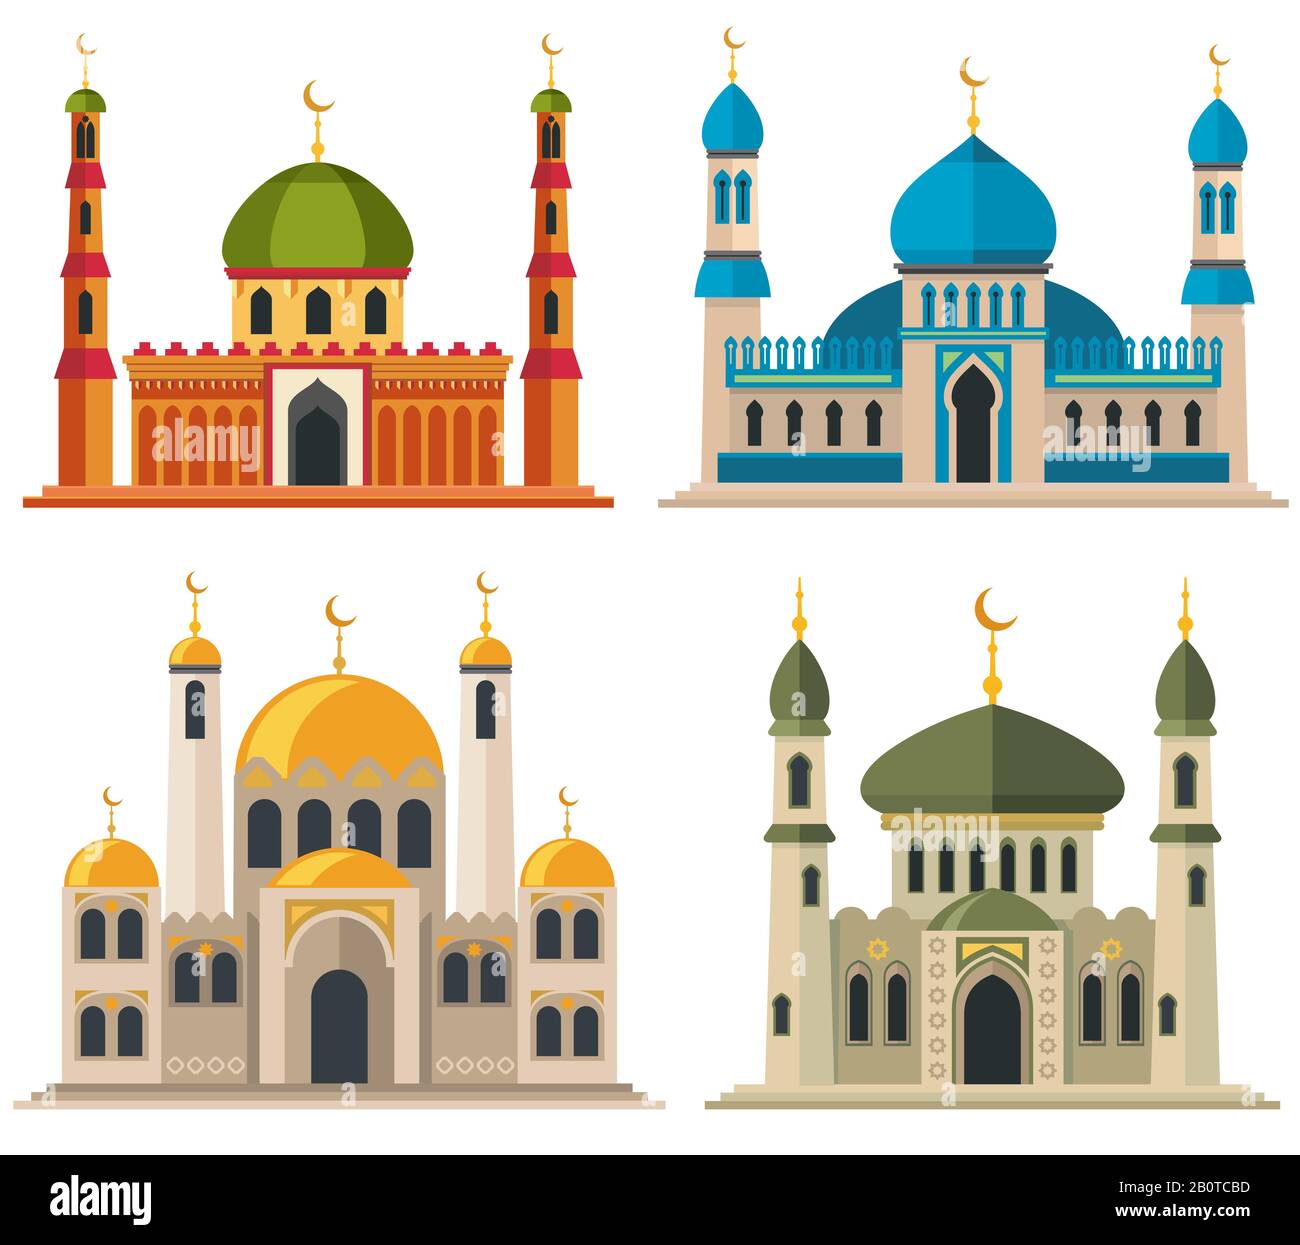 Moschee e minareti arabi musulmani. Edifici religiosi orientali cartoon architettura. Architettura islamica tradizionale, illustrazione dell'Islam religioso edificio Illustrazione Vettoriale